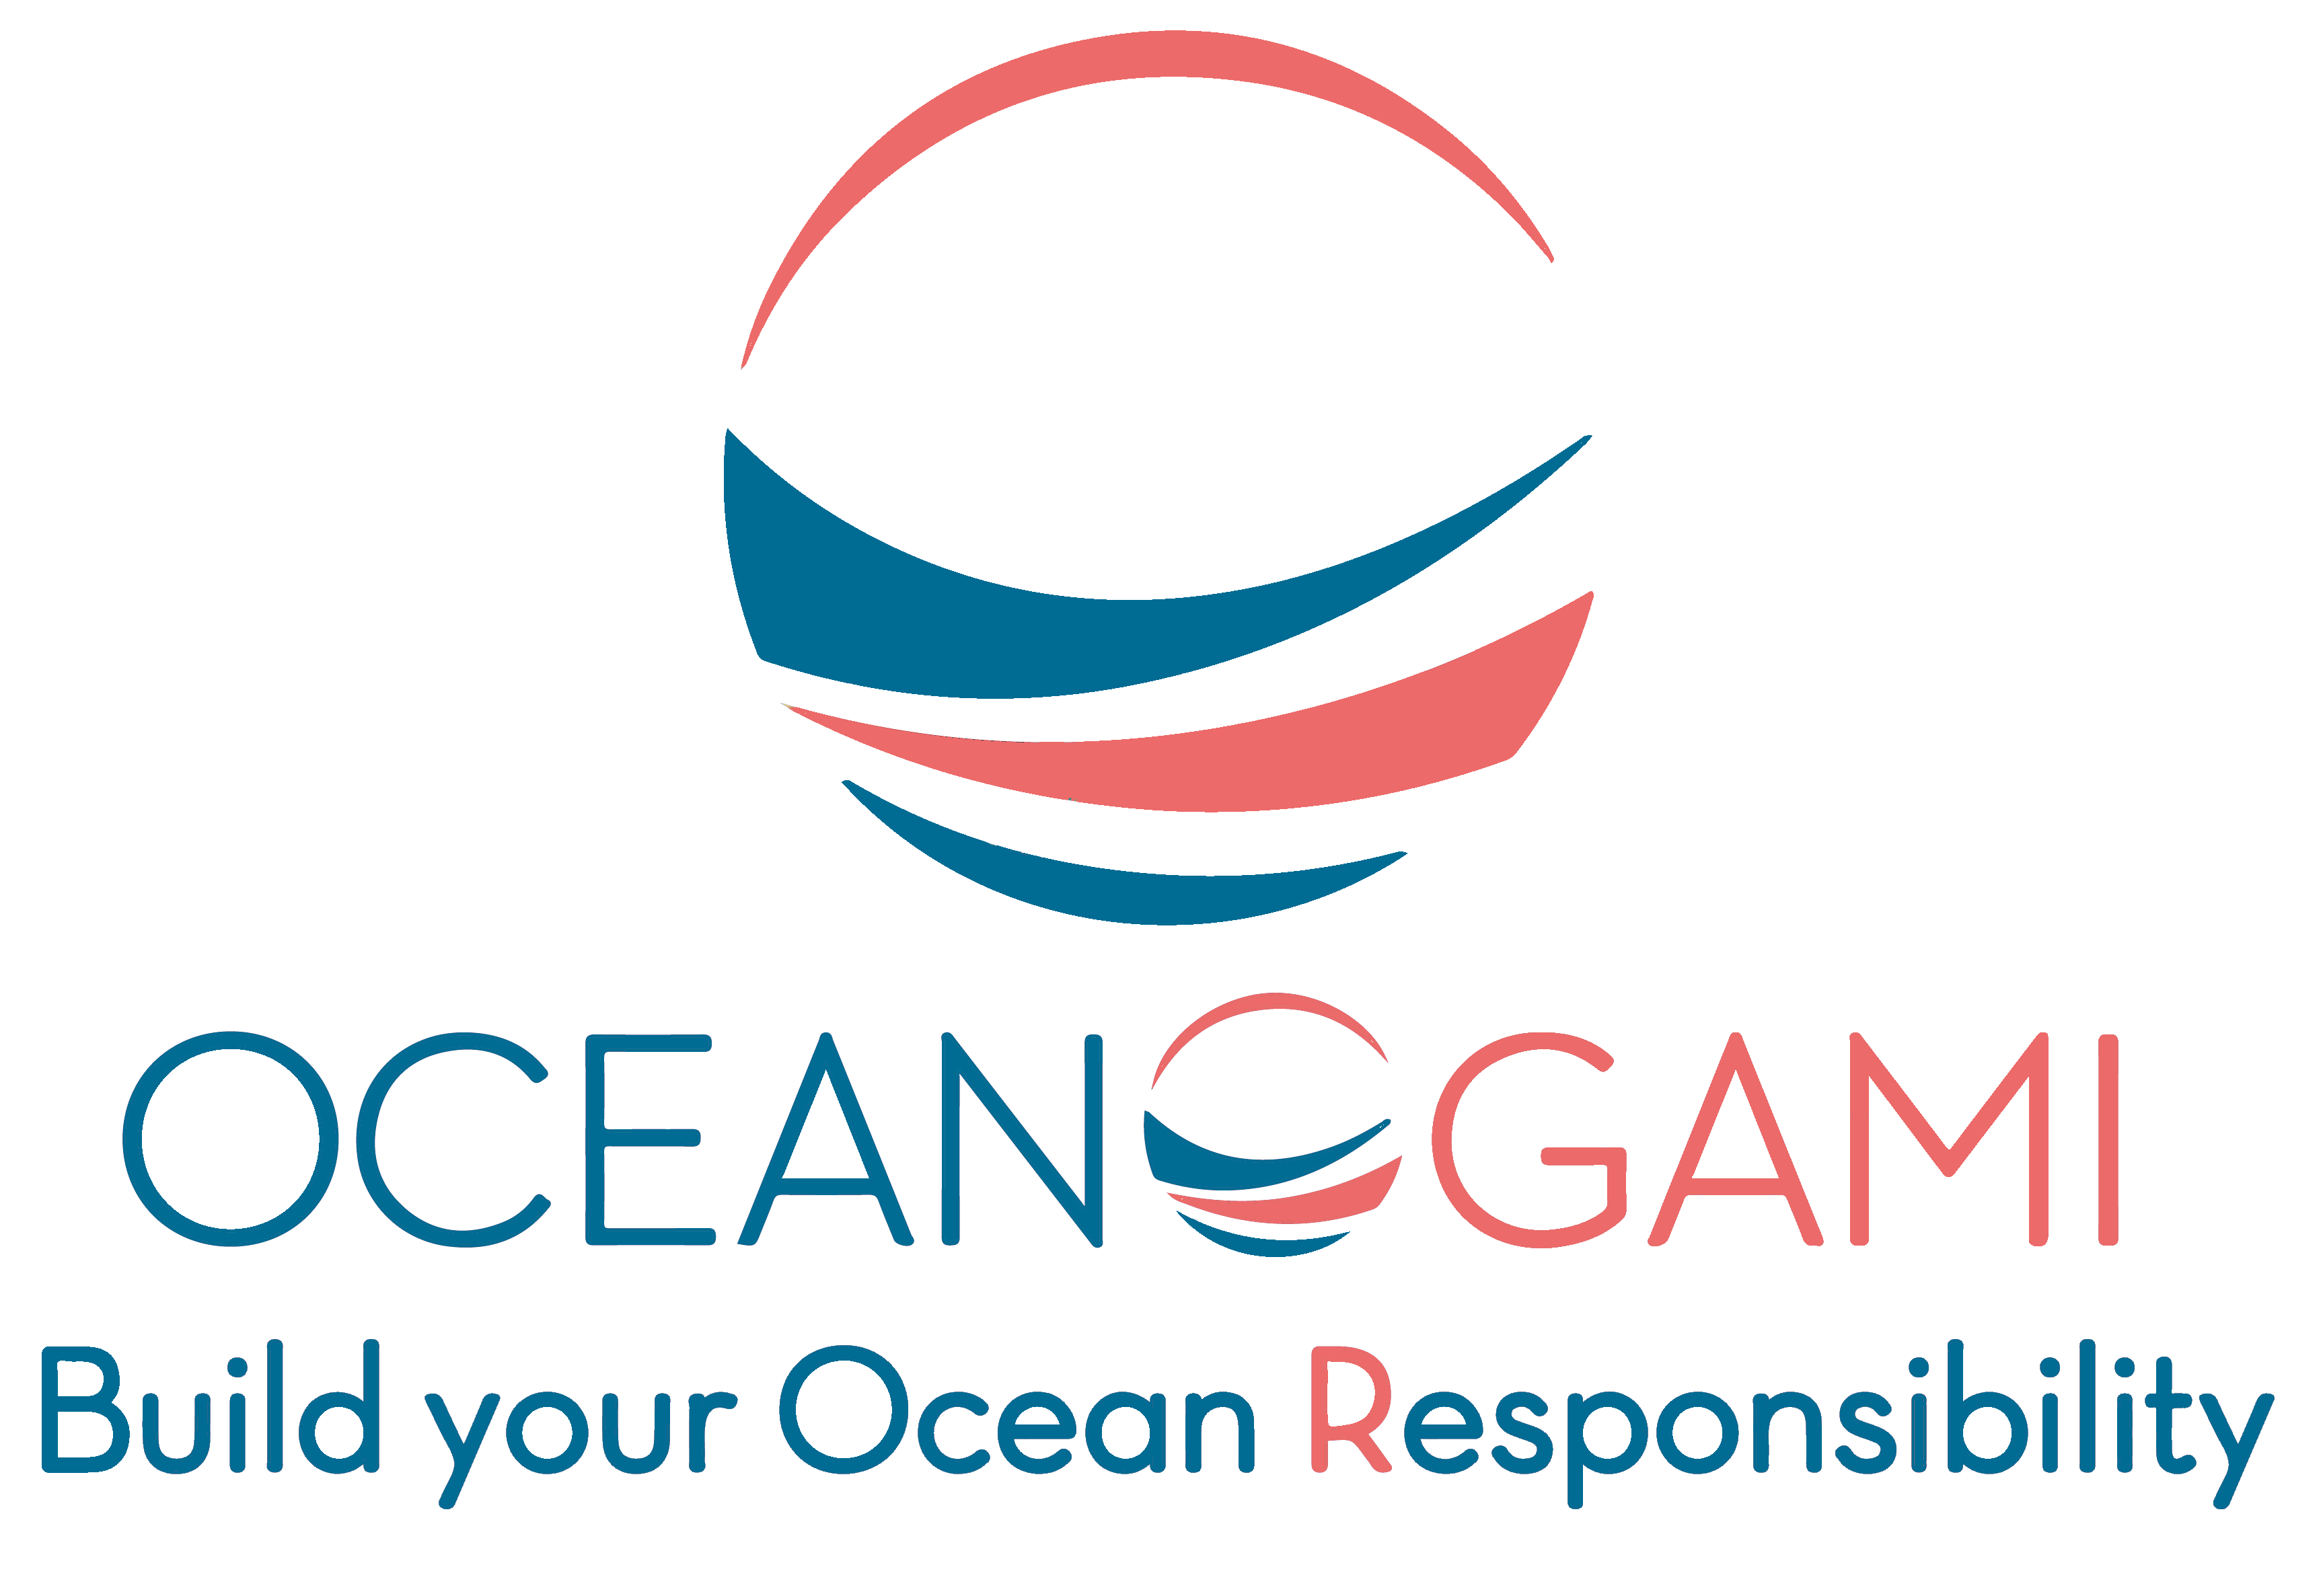 Oceanogami